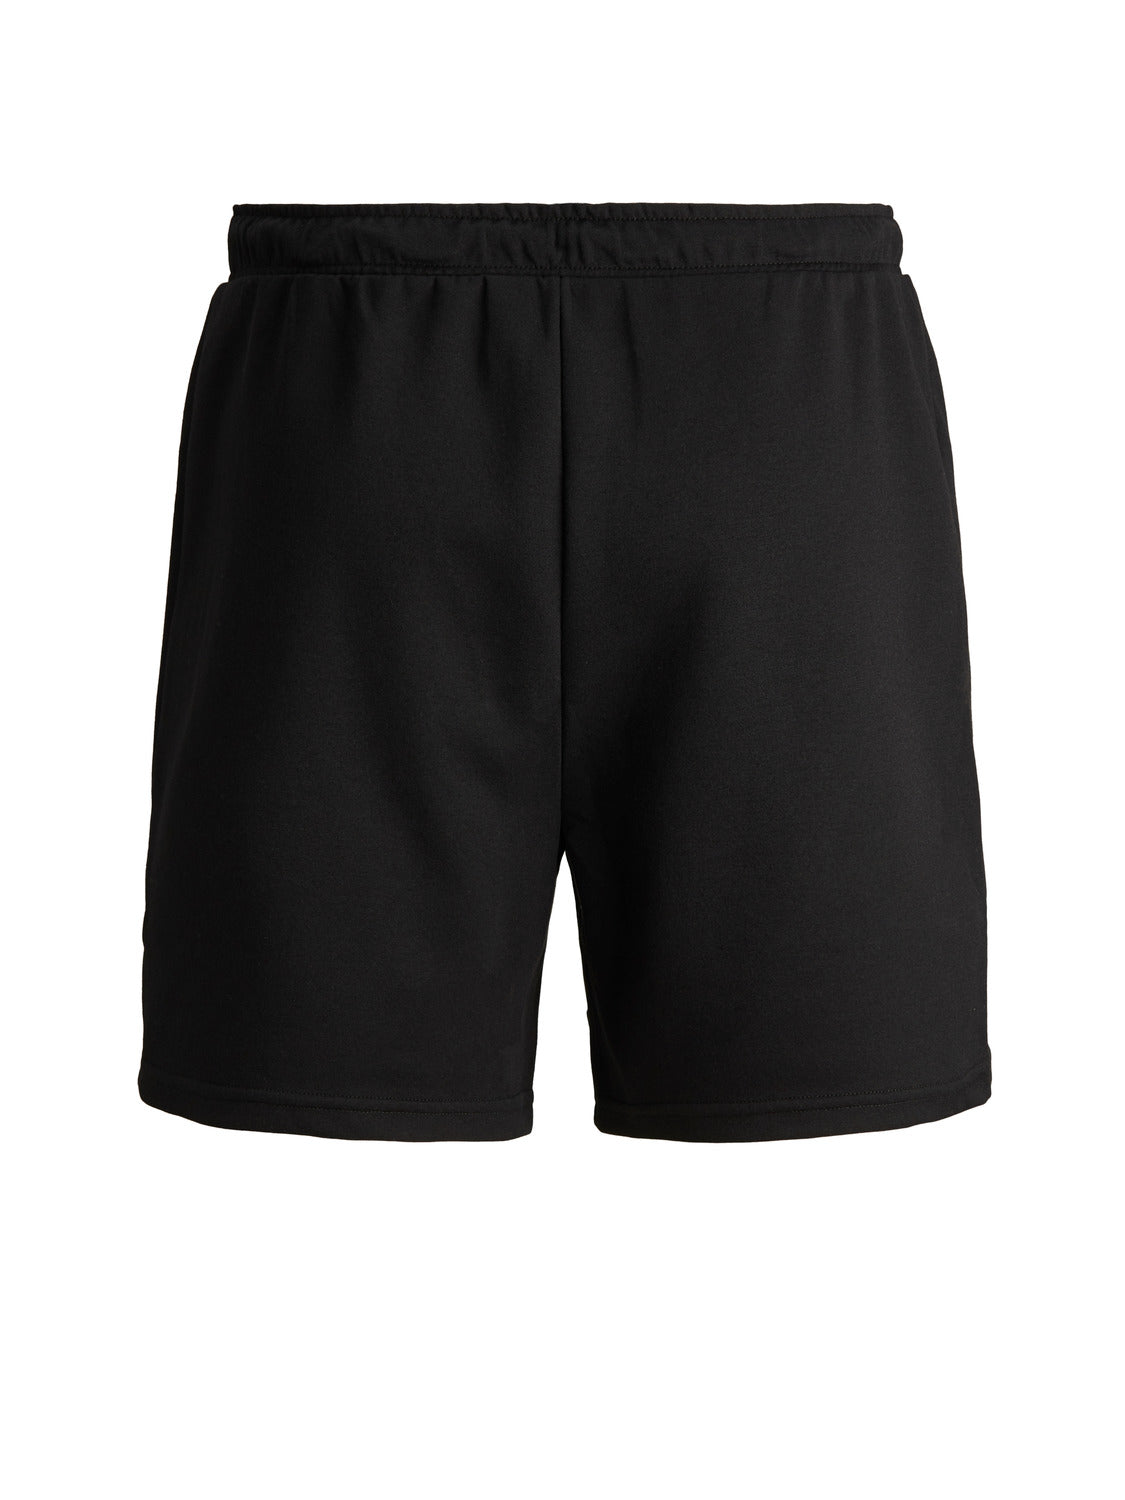 JJIAIR Shorts - Black